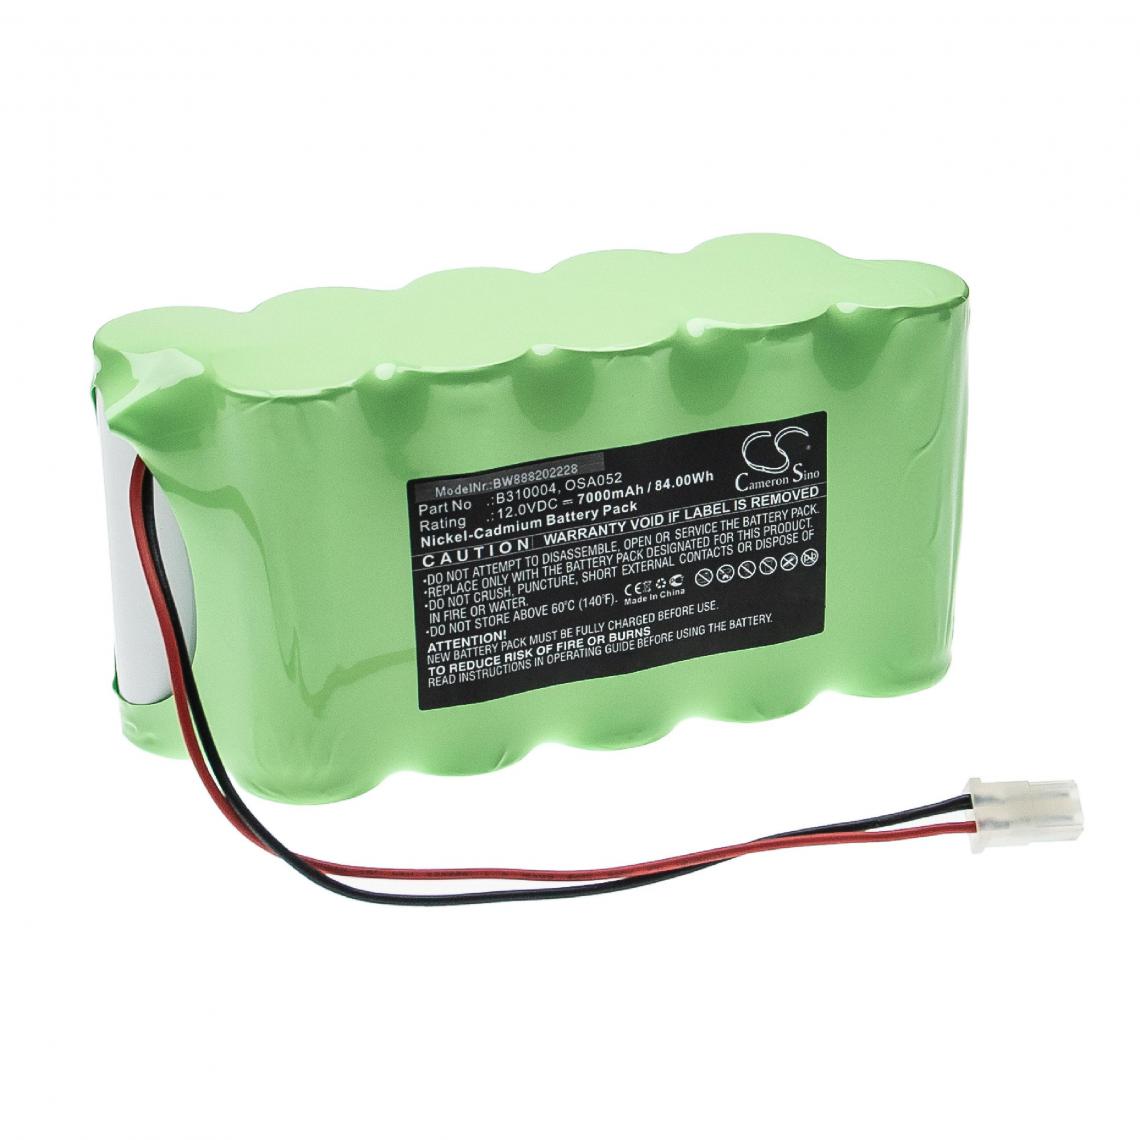 Vhbw - vhbw Batterie compatible avec Lithonia ELB1208, ELB1208N, OSA195 éclairage d'issue de secours (7000mAh, 12V, NiCd) - Autre appareil de mesure